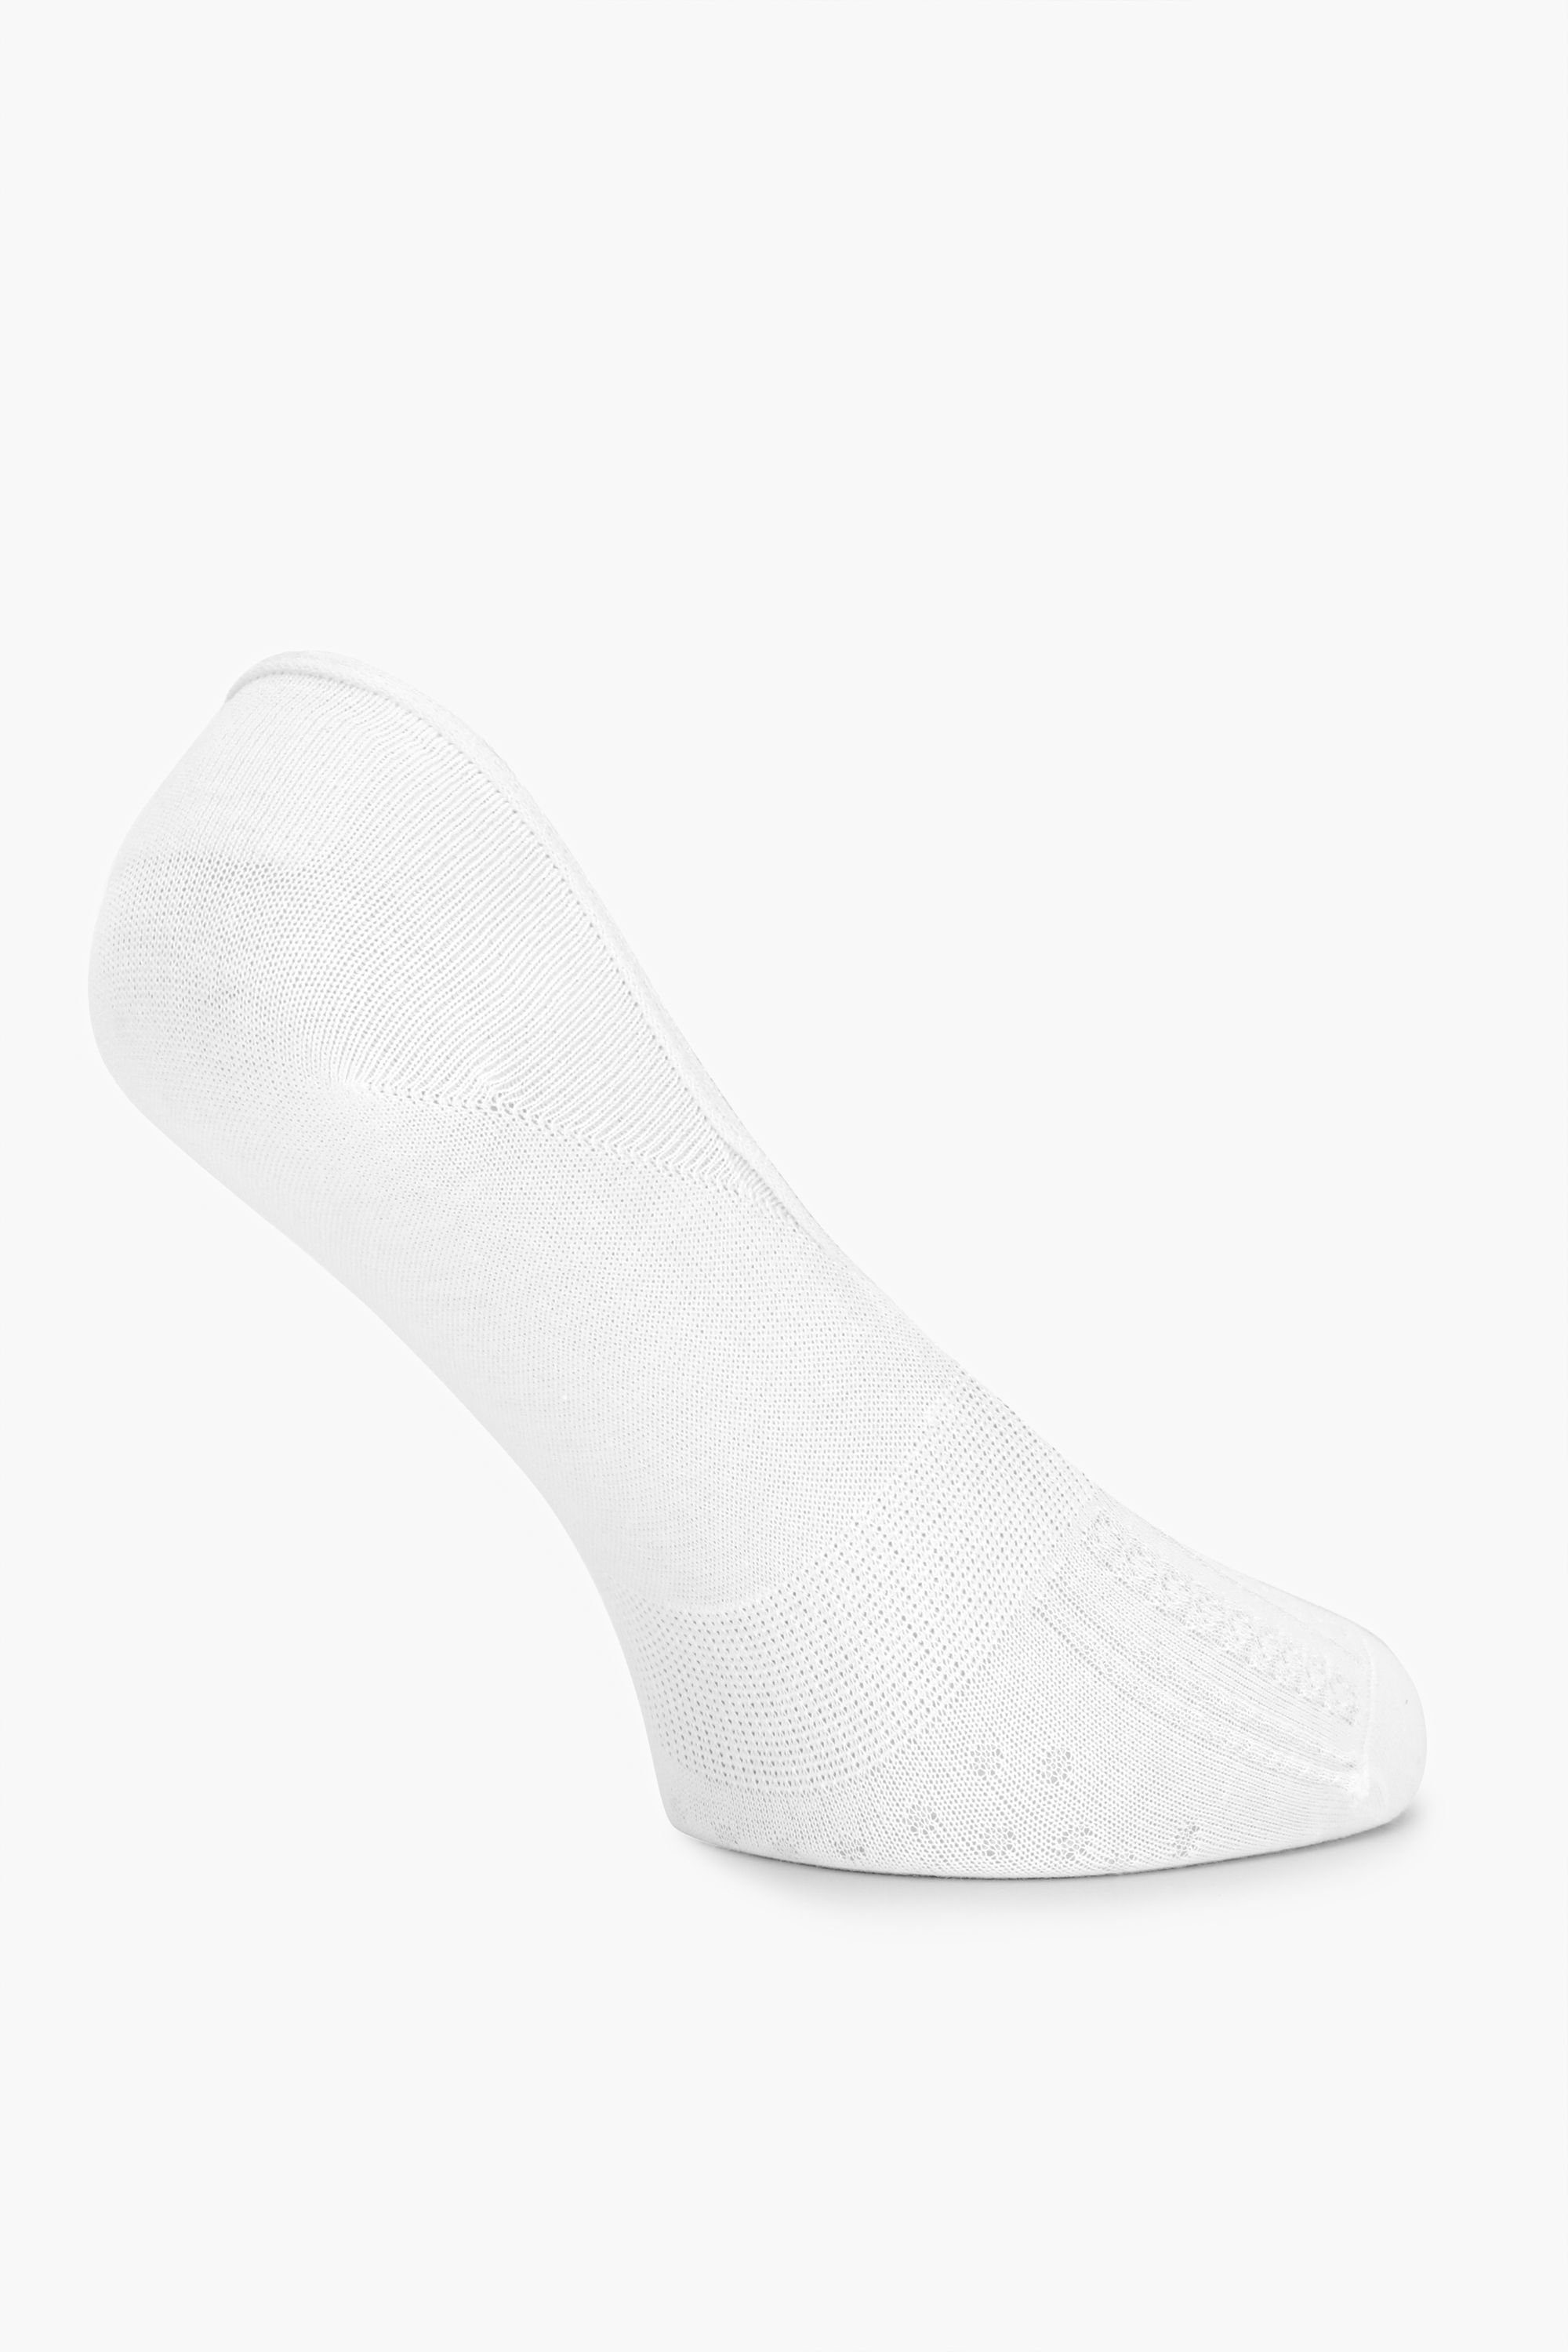 Weiß Socken MSGI034 Socken Damen Style Sneaker Merry